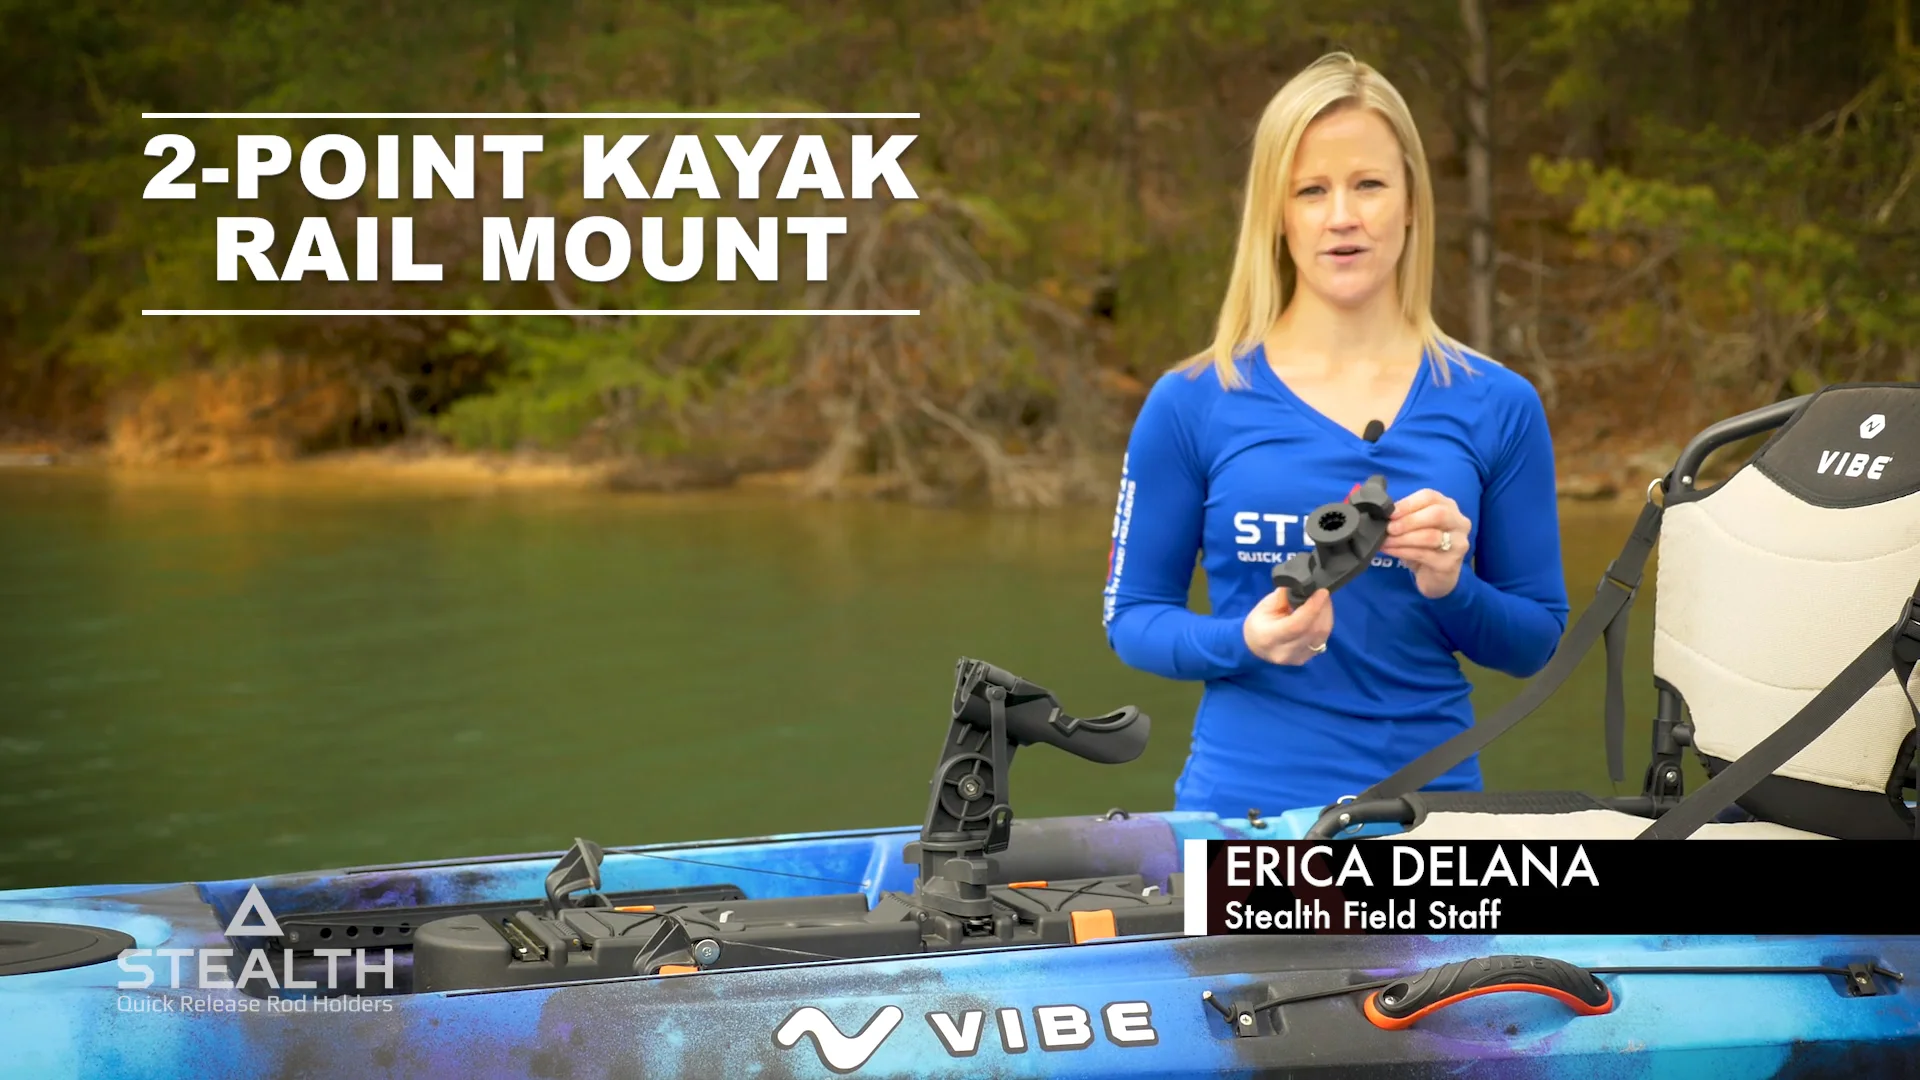 Kayak Rail Mount on Vimeo